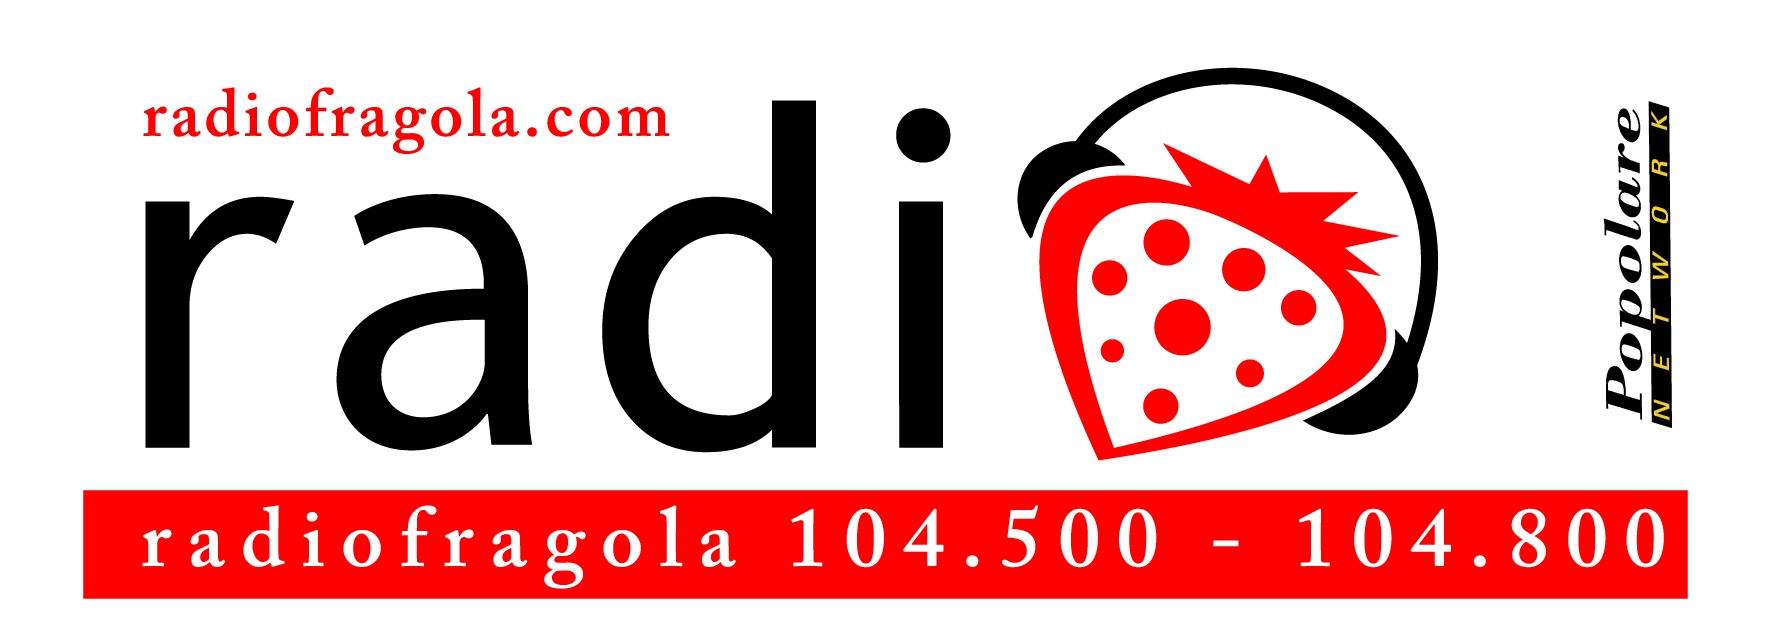 logo-radiofragola-2010